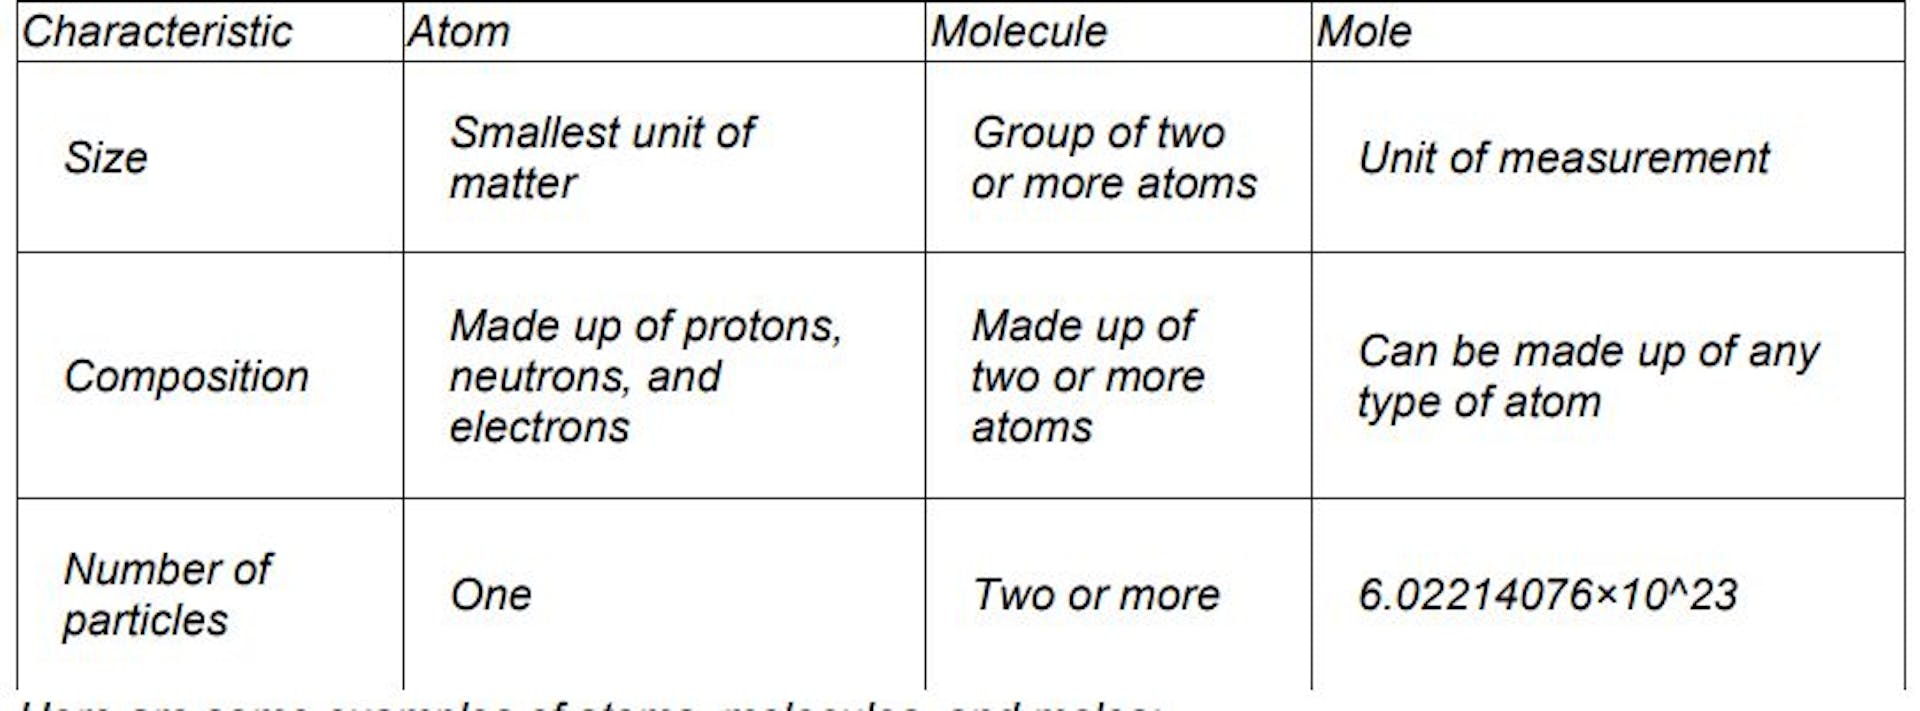 featured image - Cómo los GenAIbots explican la diferencia entre átomos, moléculas y moles